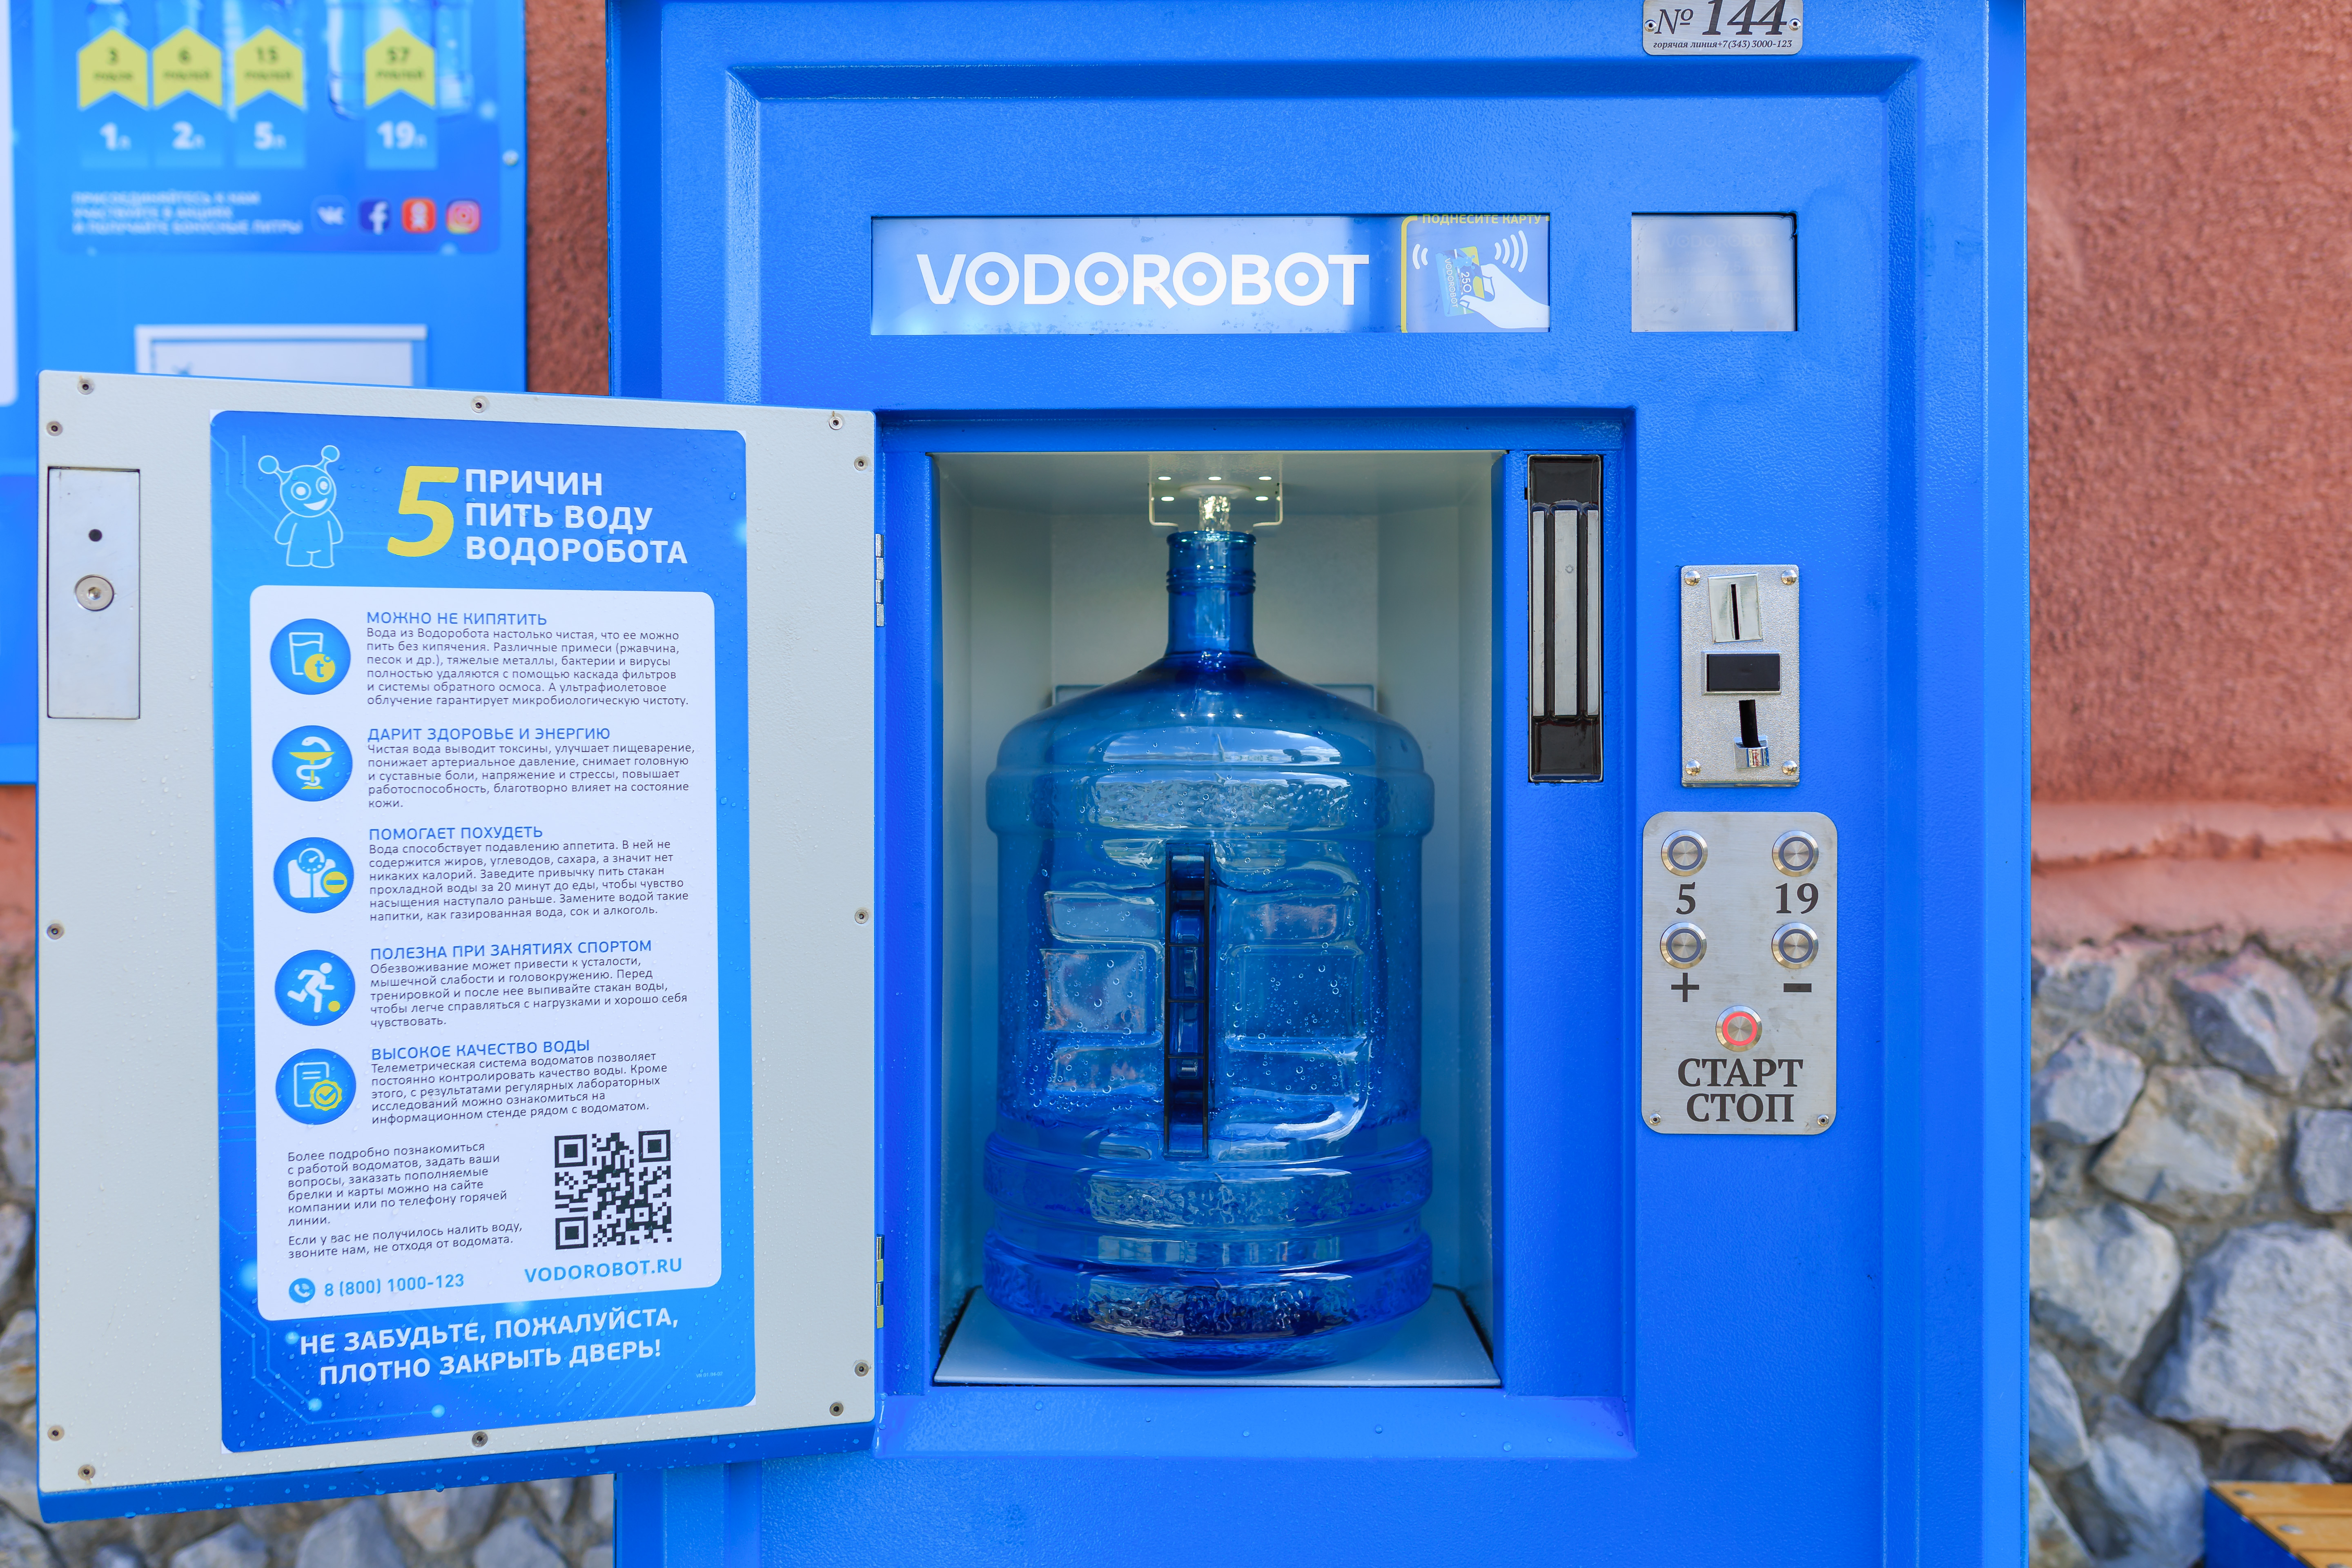 Автомат фильтр воды. Автомат питьевой воды. Автомат с бутилированной водой. Водоробот автомат. Аппарат для питьевой воды на улице.